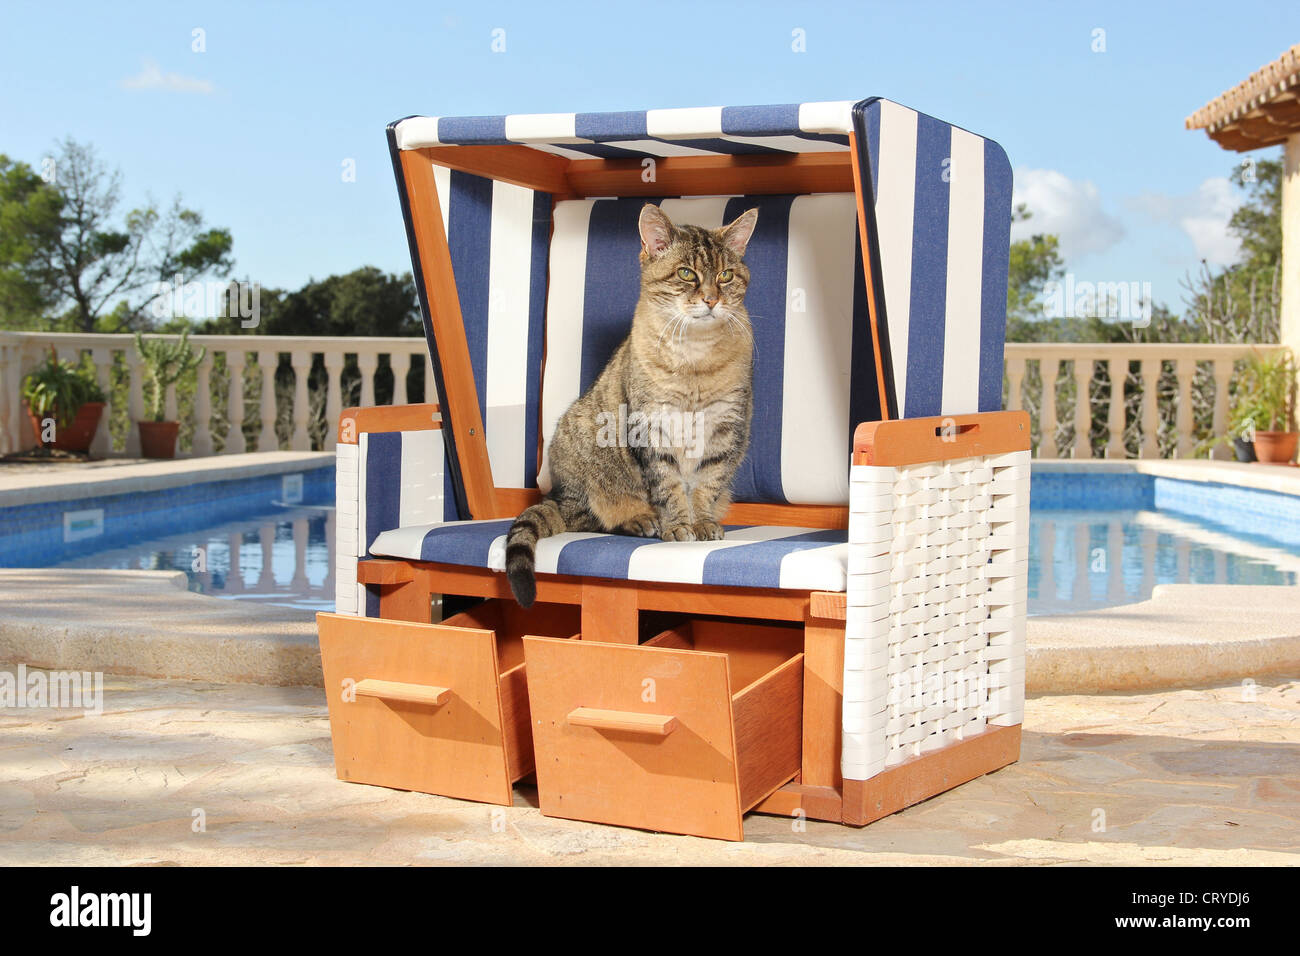 Inländische Katze Tabby Katze Terrasse sitzen überdachte Strandkorb  Stockfotografie - Alamy